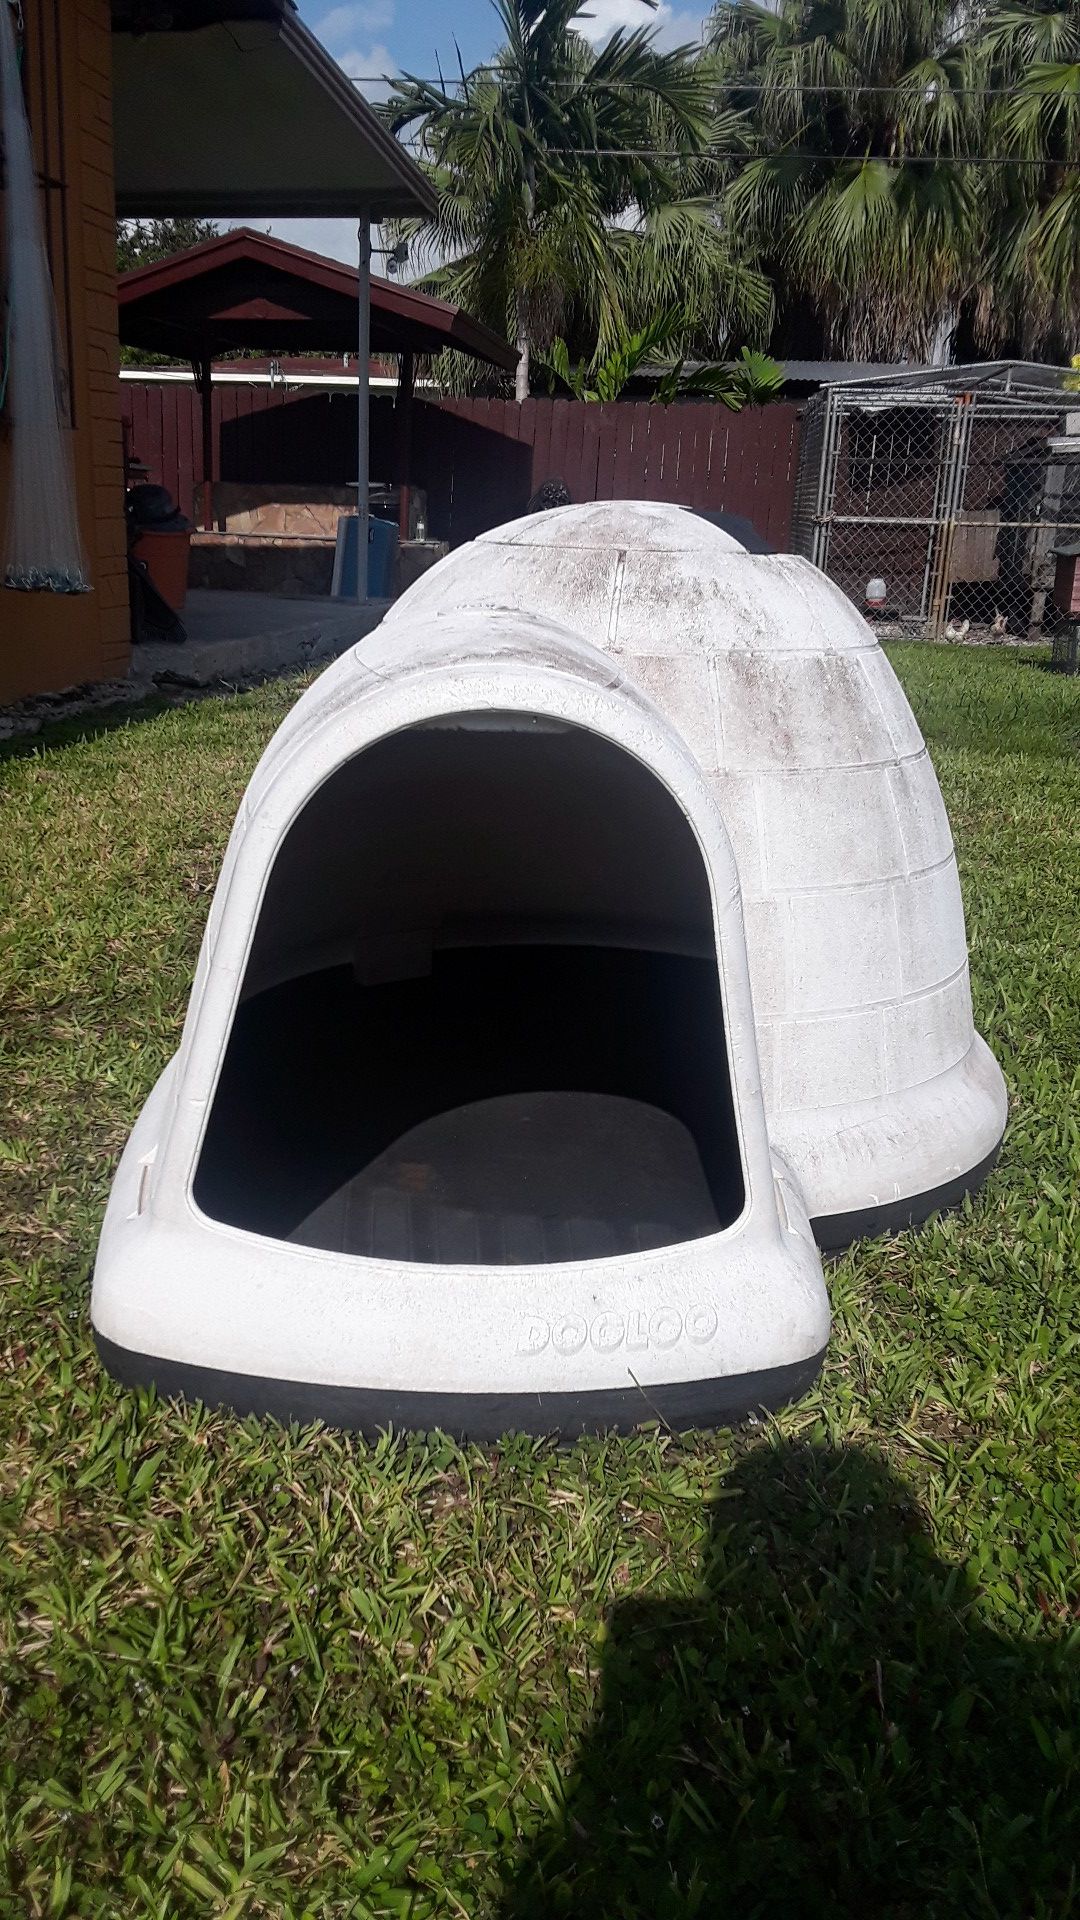 Indigo igloo large dog house $30